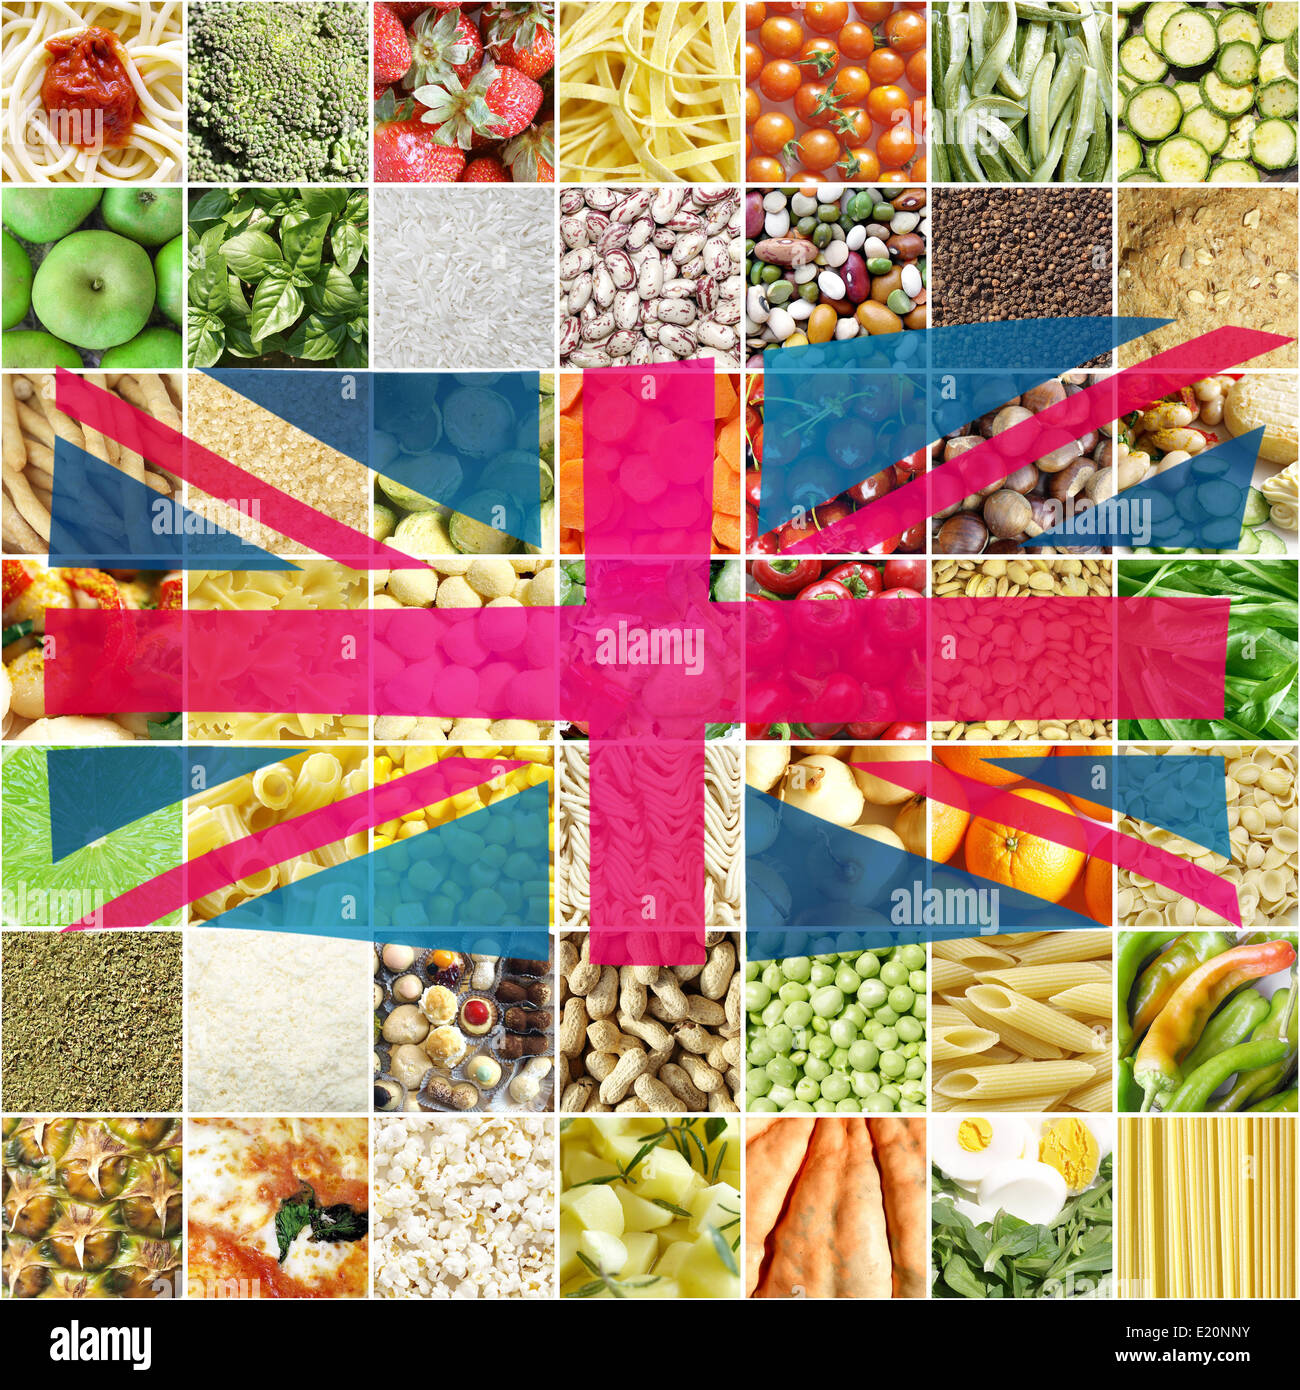 Union Jack UK flag Stock Photo